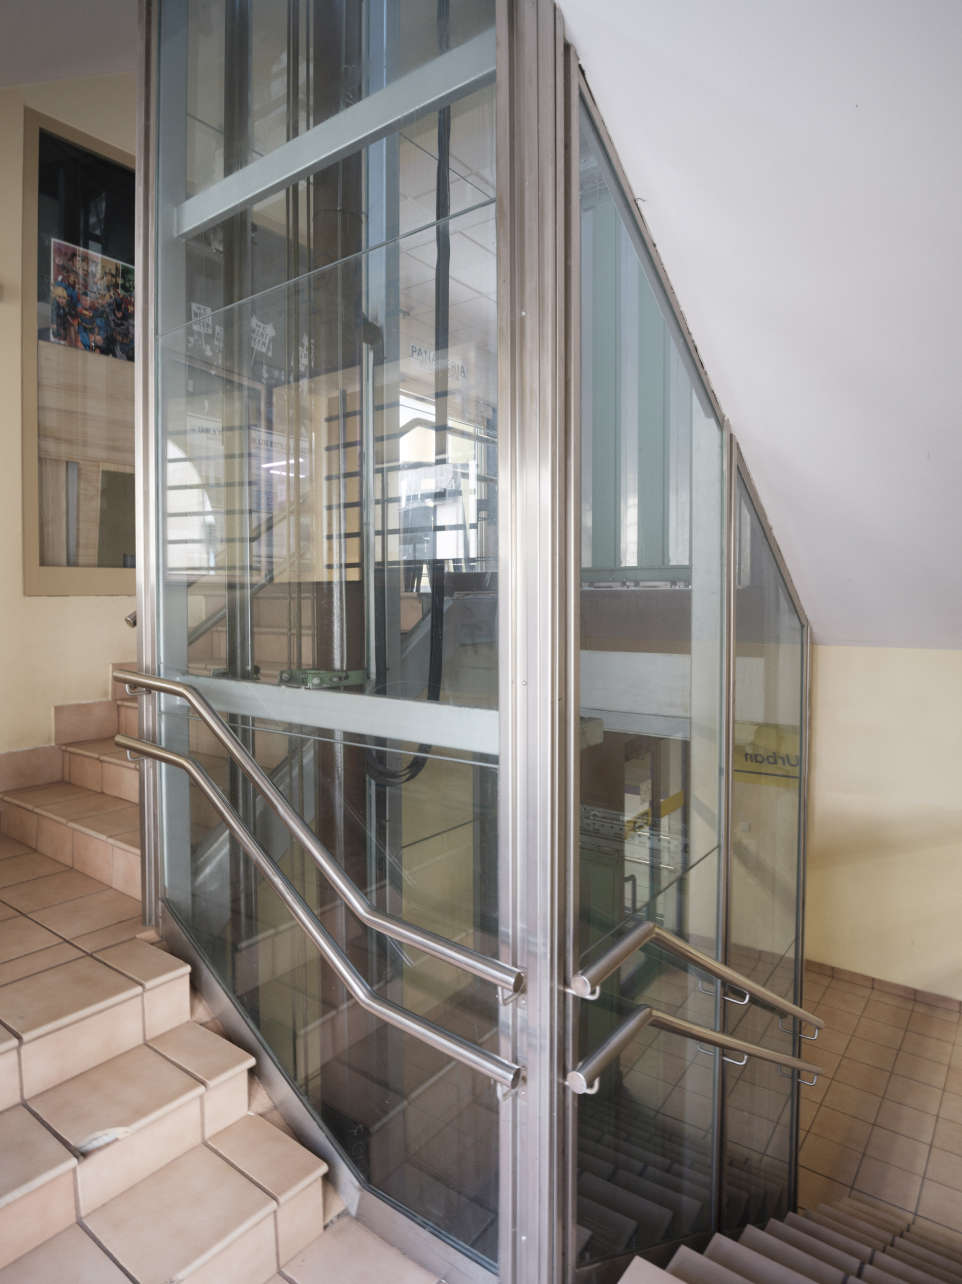 Trabajo de modernización e instalación de Eguzkimendi en fachada con escalera antigua.